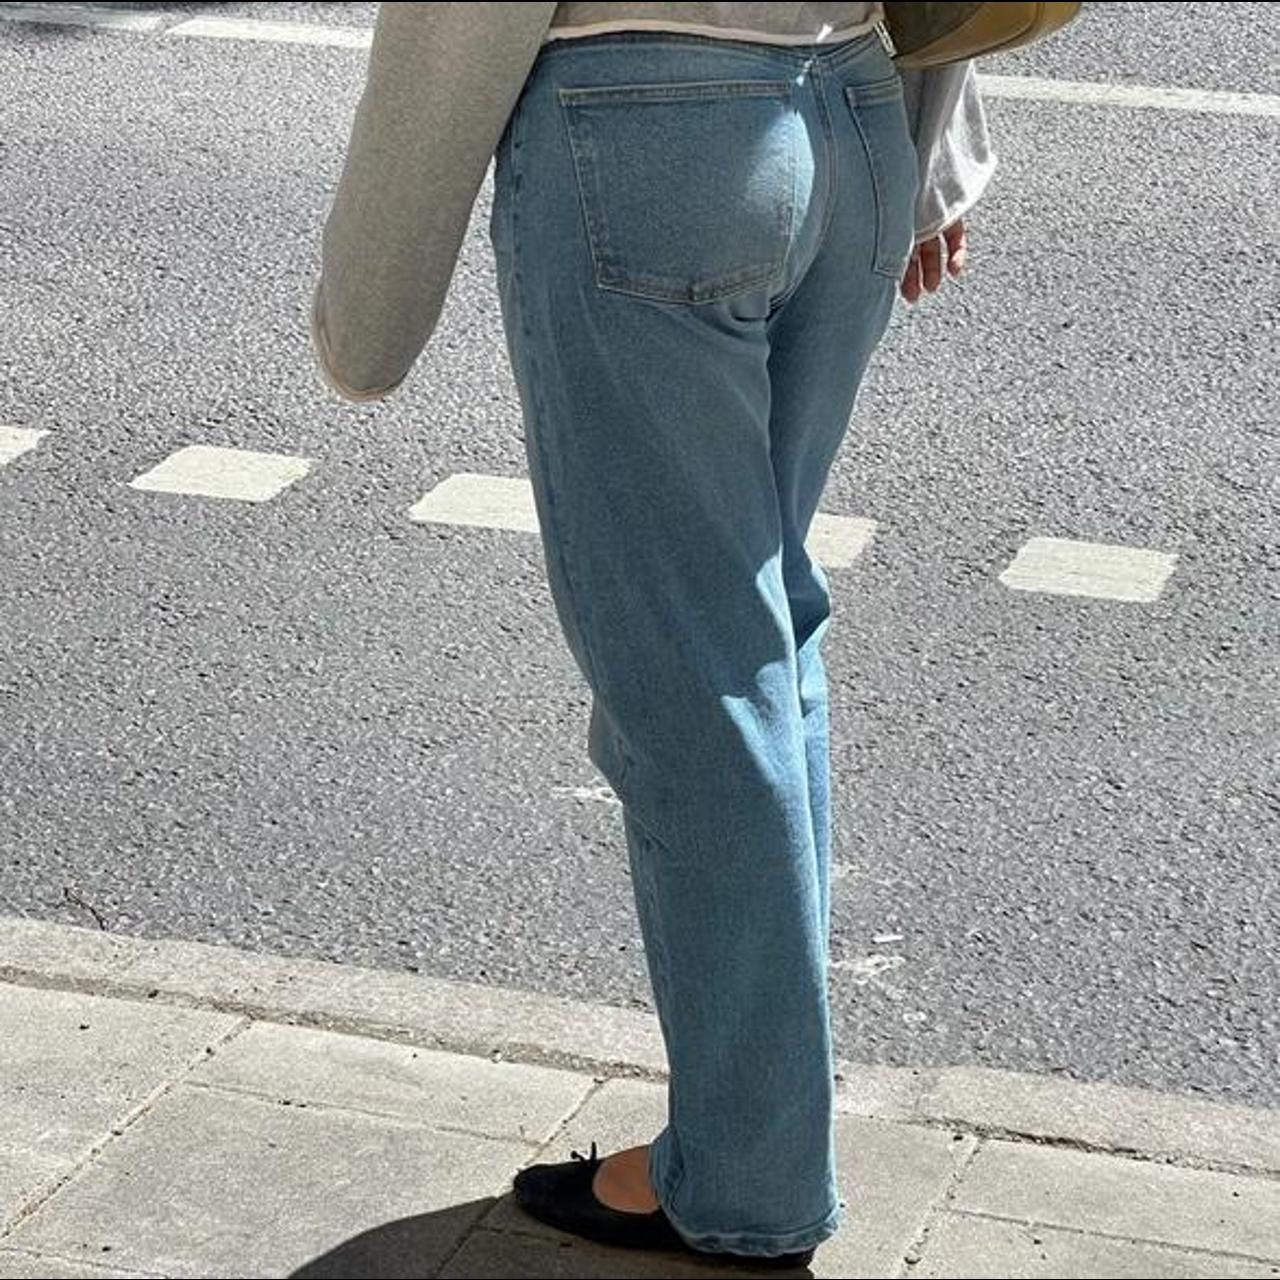 Djerf Avenue Women's Jeans (5)